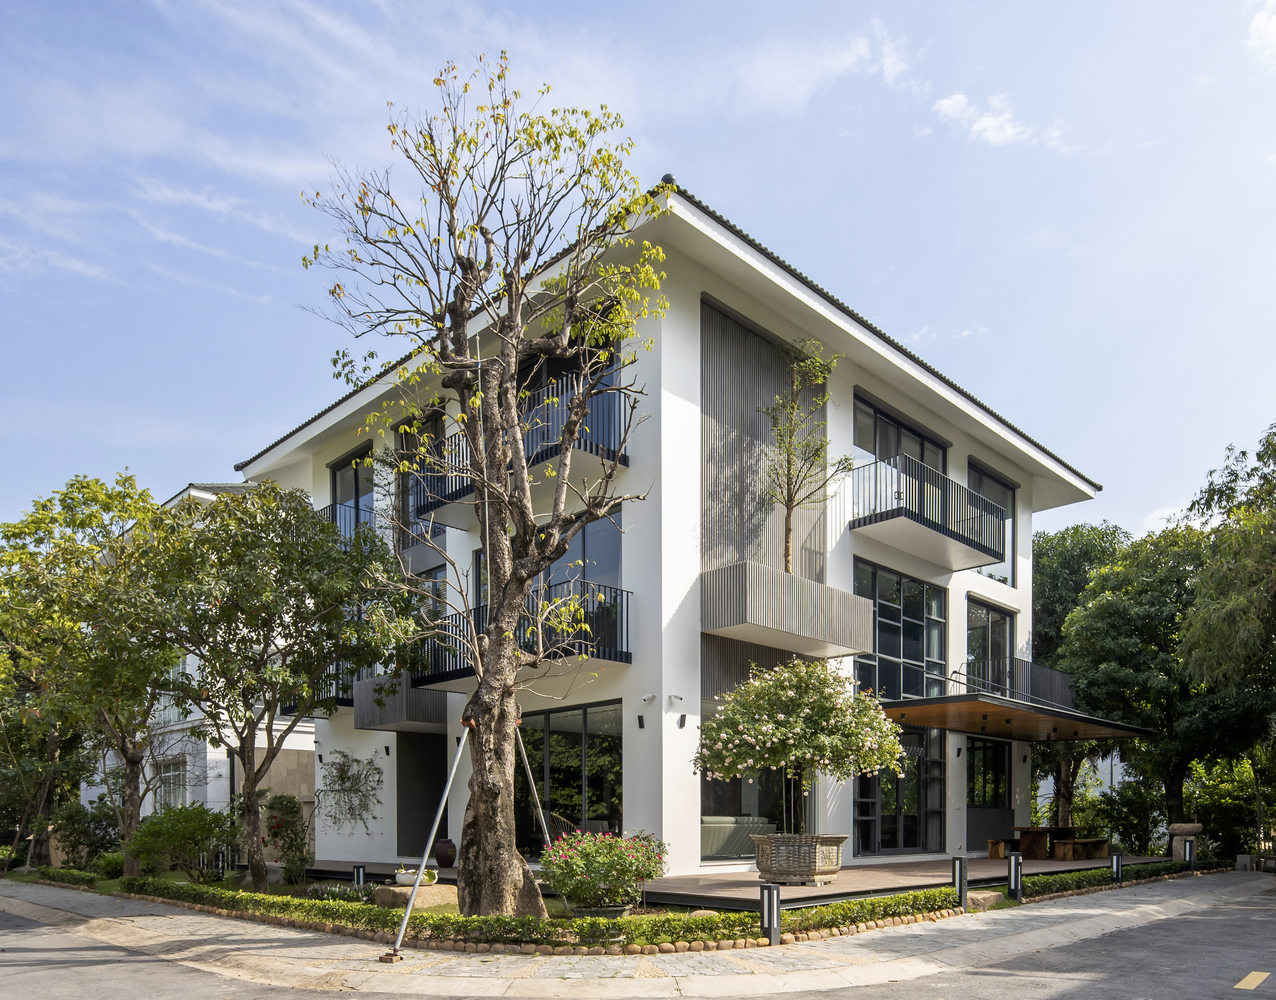 Căn biệt thự đơn lập ở Ecopark, Văn Giang, Hưng Yên được thiết kế theo phong cách hiện đại trên diện tích đất 20x20m, diện tích xây dựng 474m2.